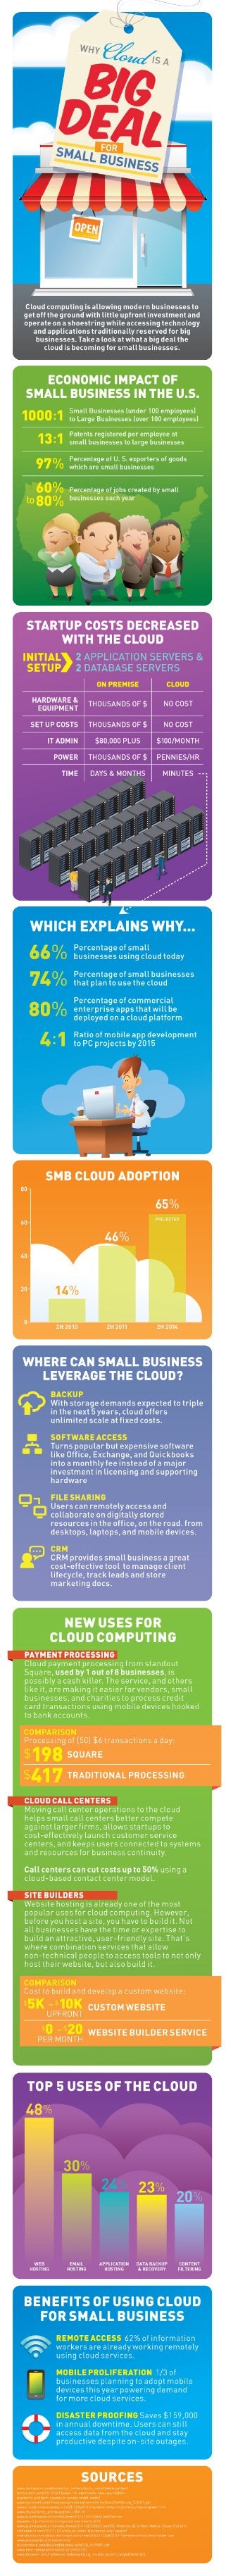 Beneficiile cloud computing pentru afacerile mici si mijlocii